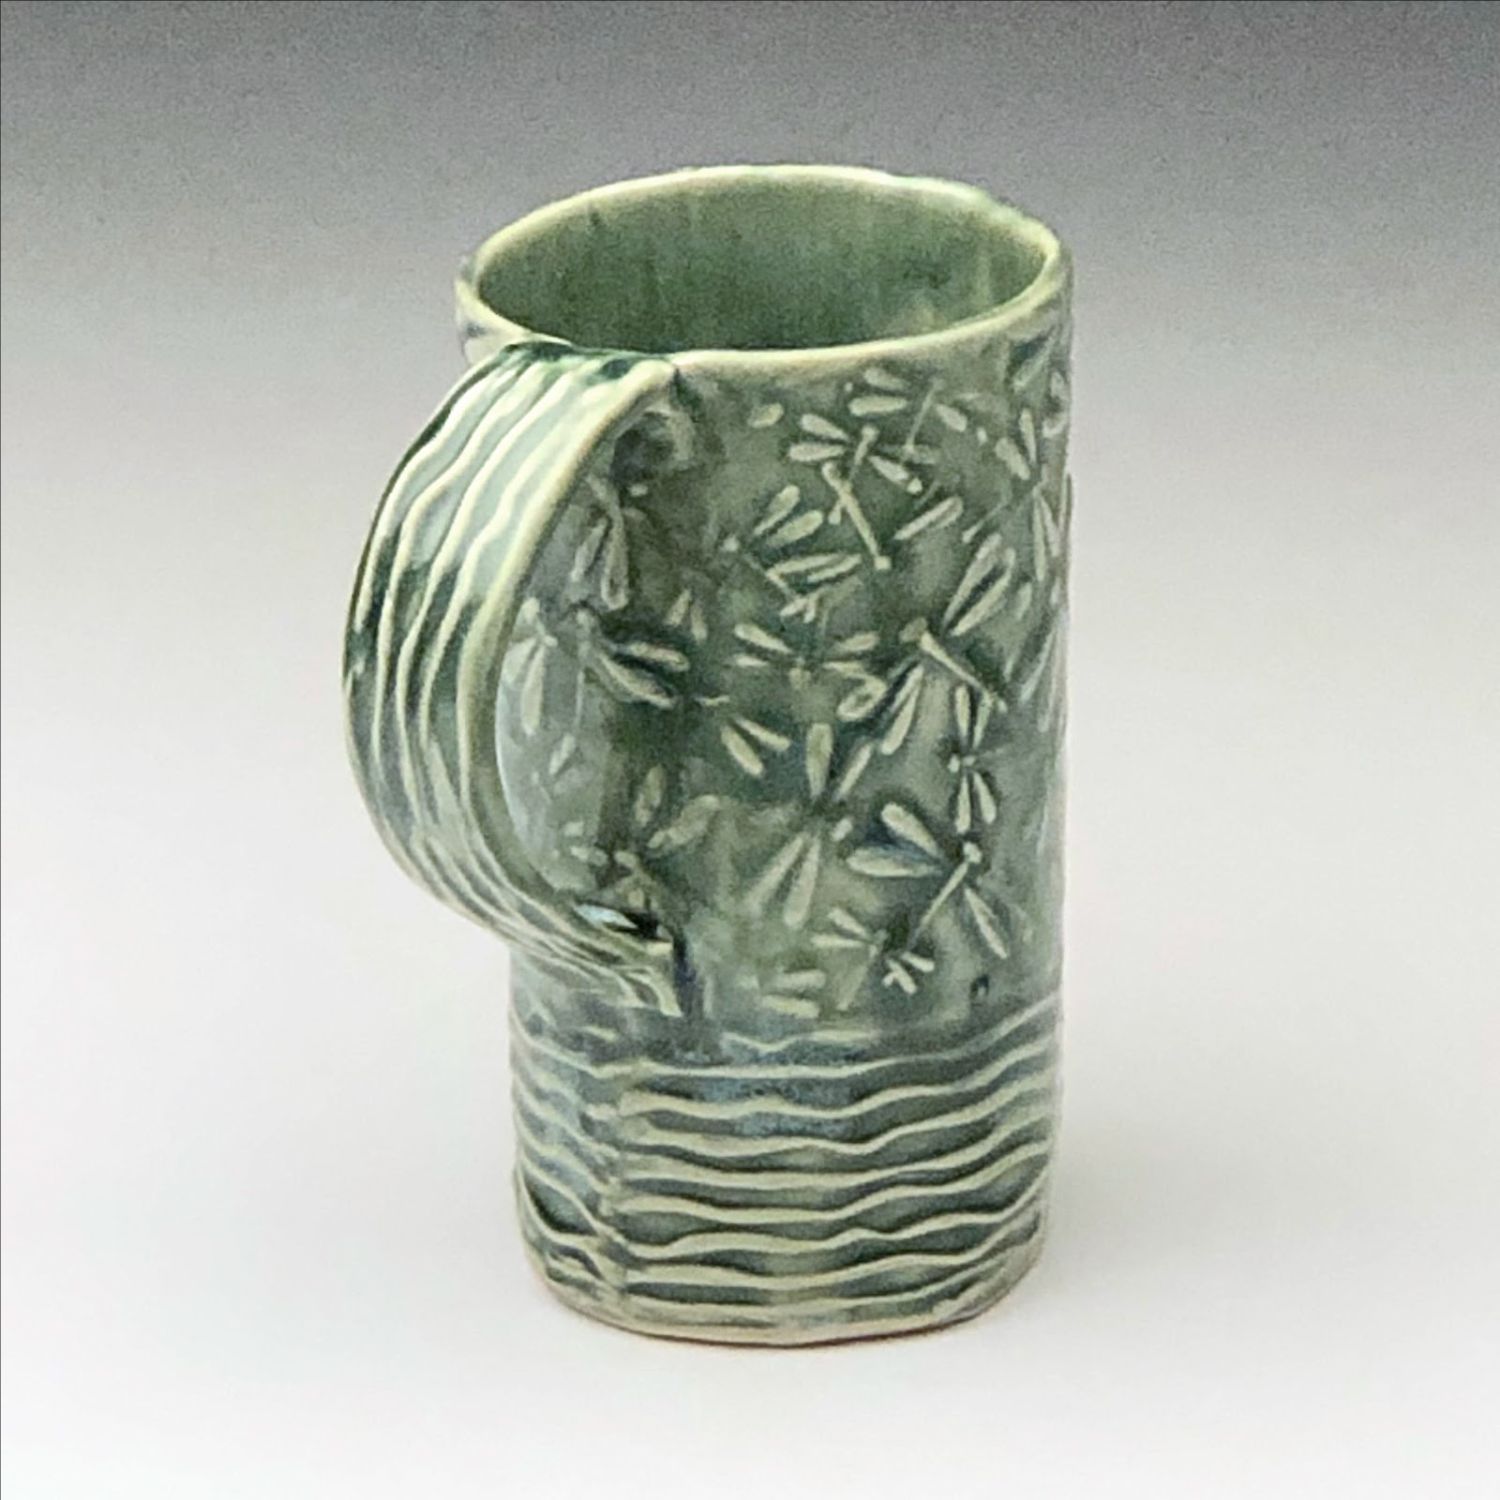 Audrey Mah: Green Dragonfly Mug Product Image 2 of 3